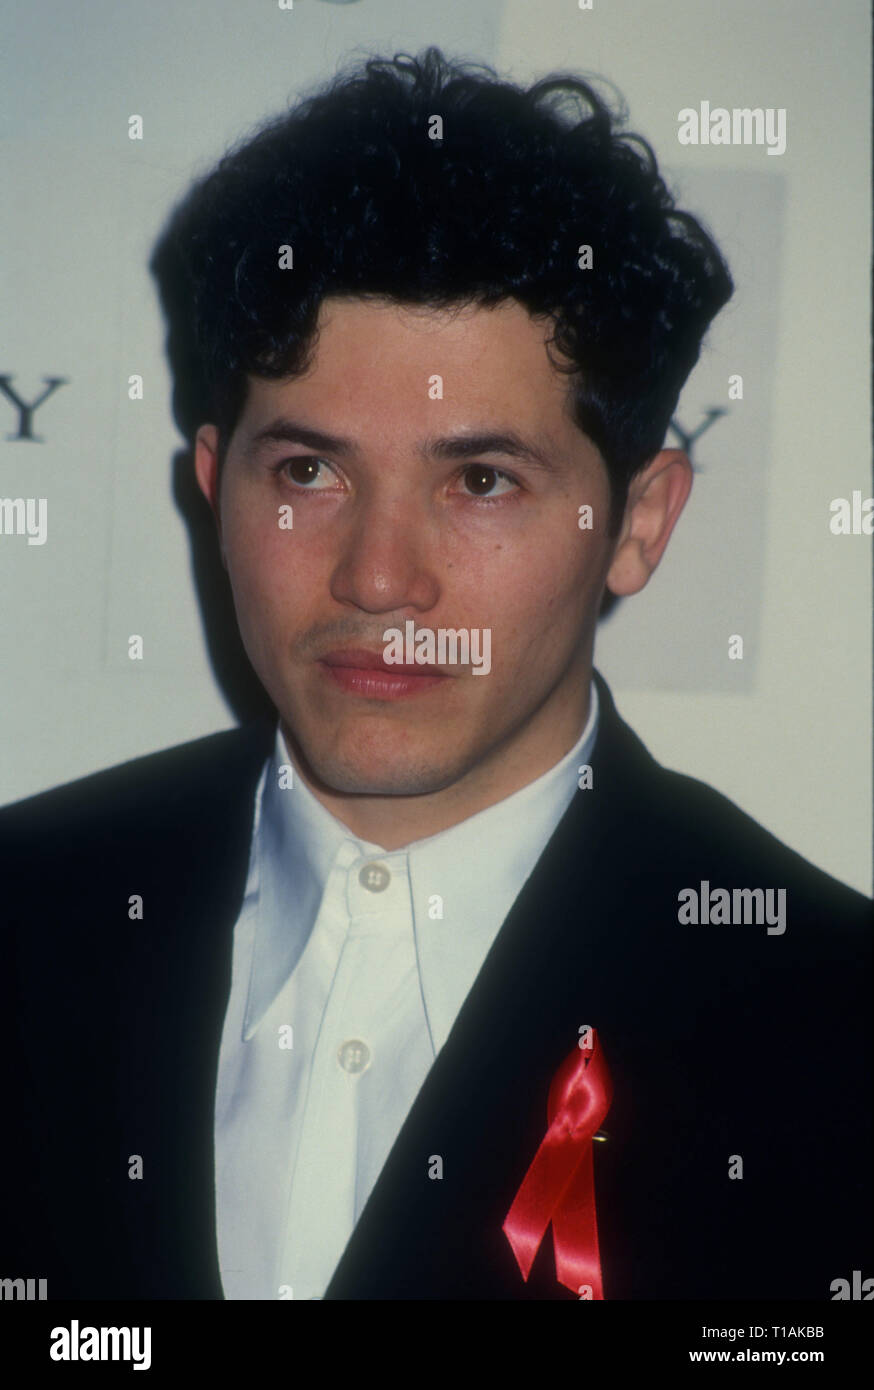 LOS ANGELES, Ca - 6. März: Schauspieler John Leguizamo besucht die achte jährliche American Comedy Awards am 6. März 1994 im Shrine Auditorium in Los Angeles, Kalifornien. Foto von Barry King/Alamy Stock Foto Stockfoto